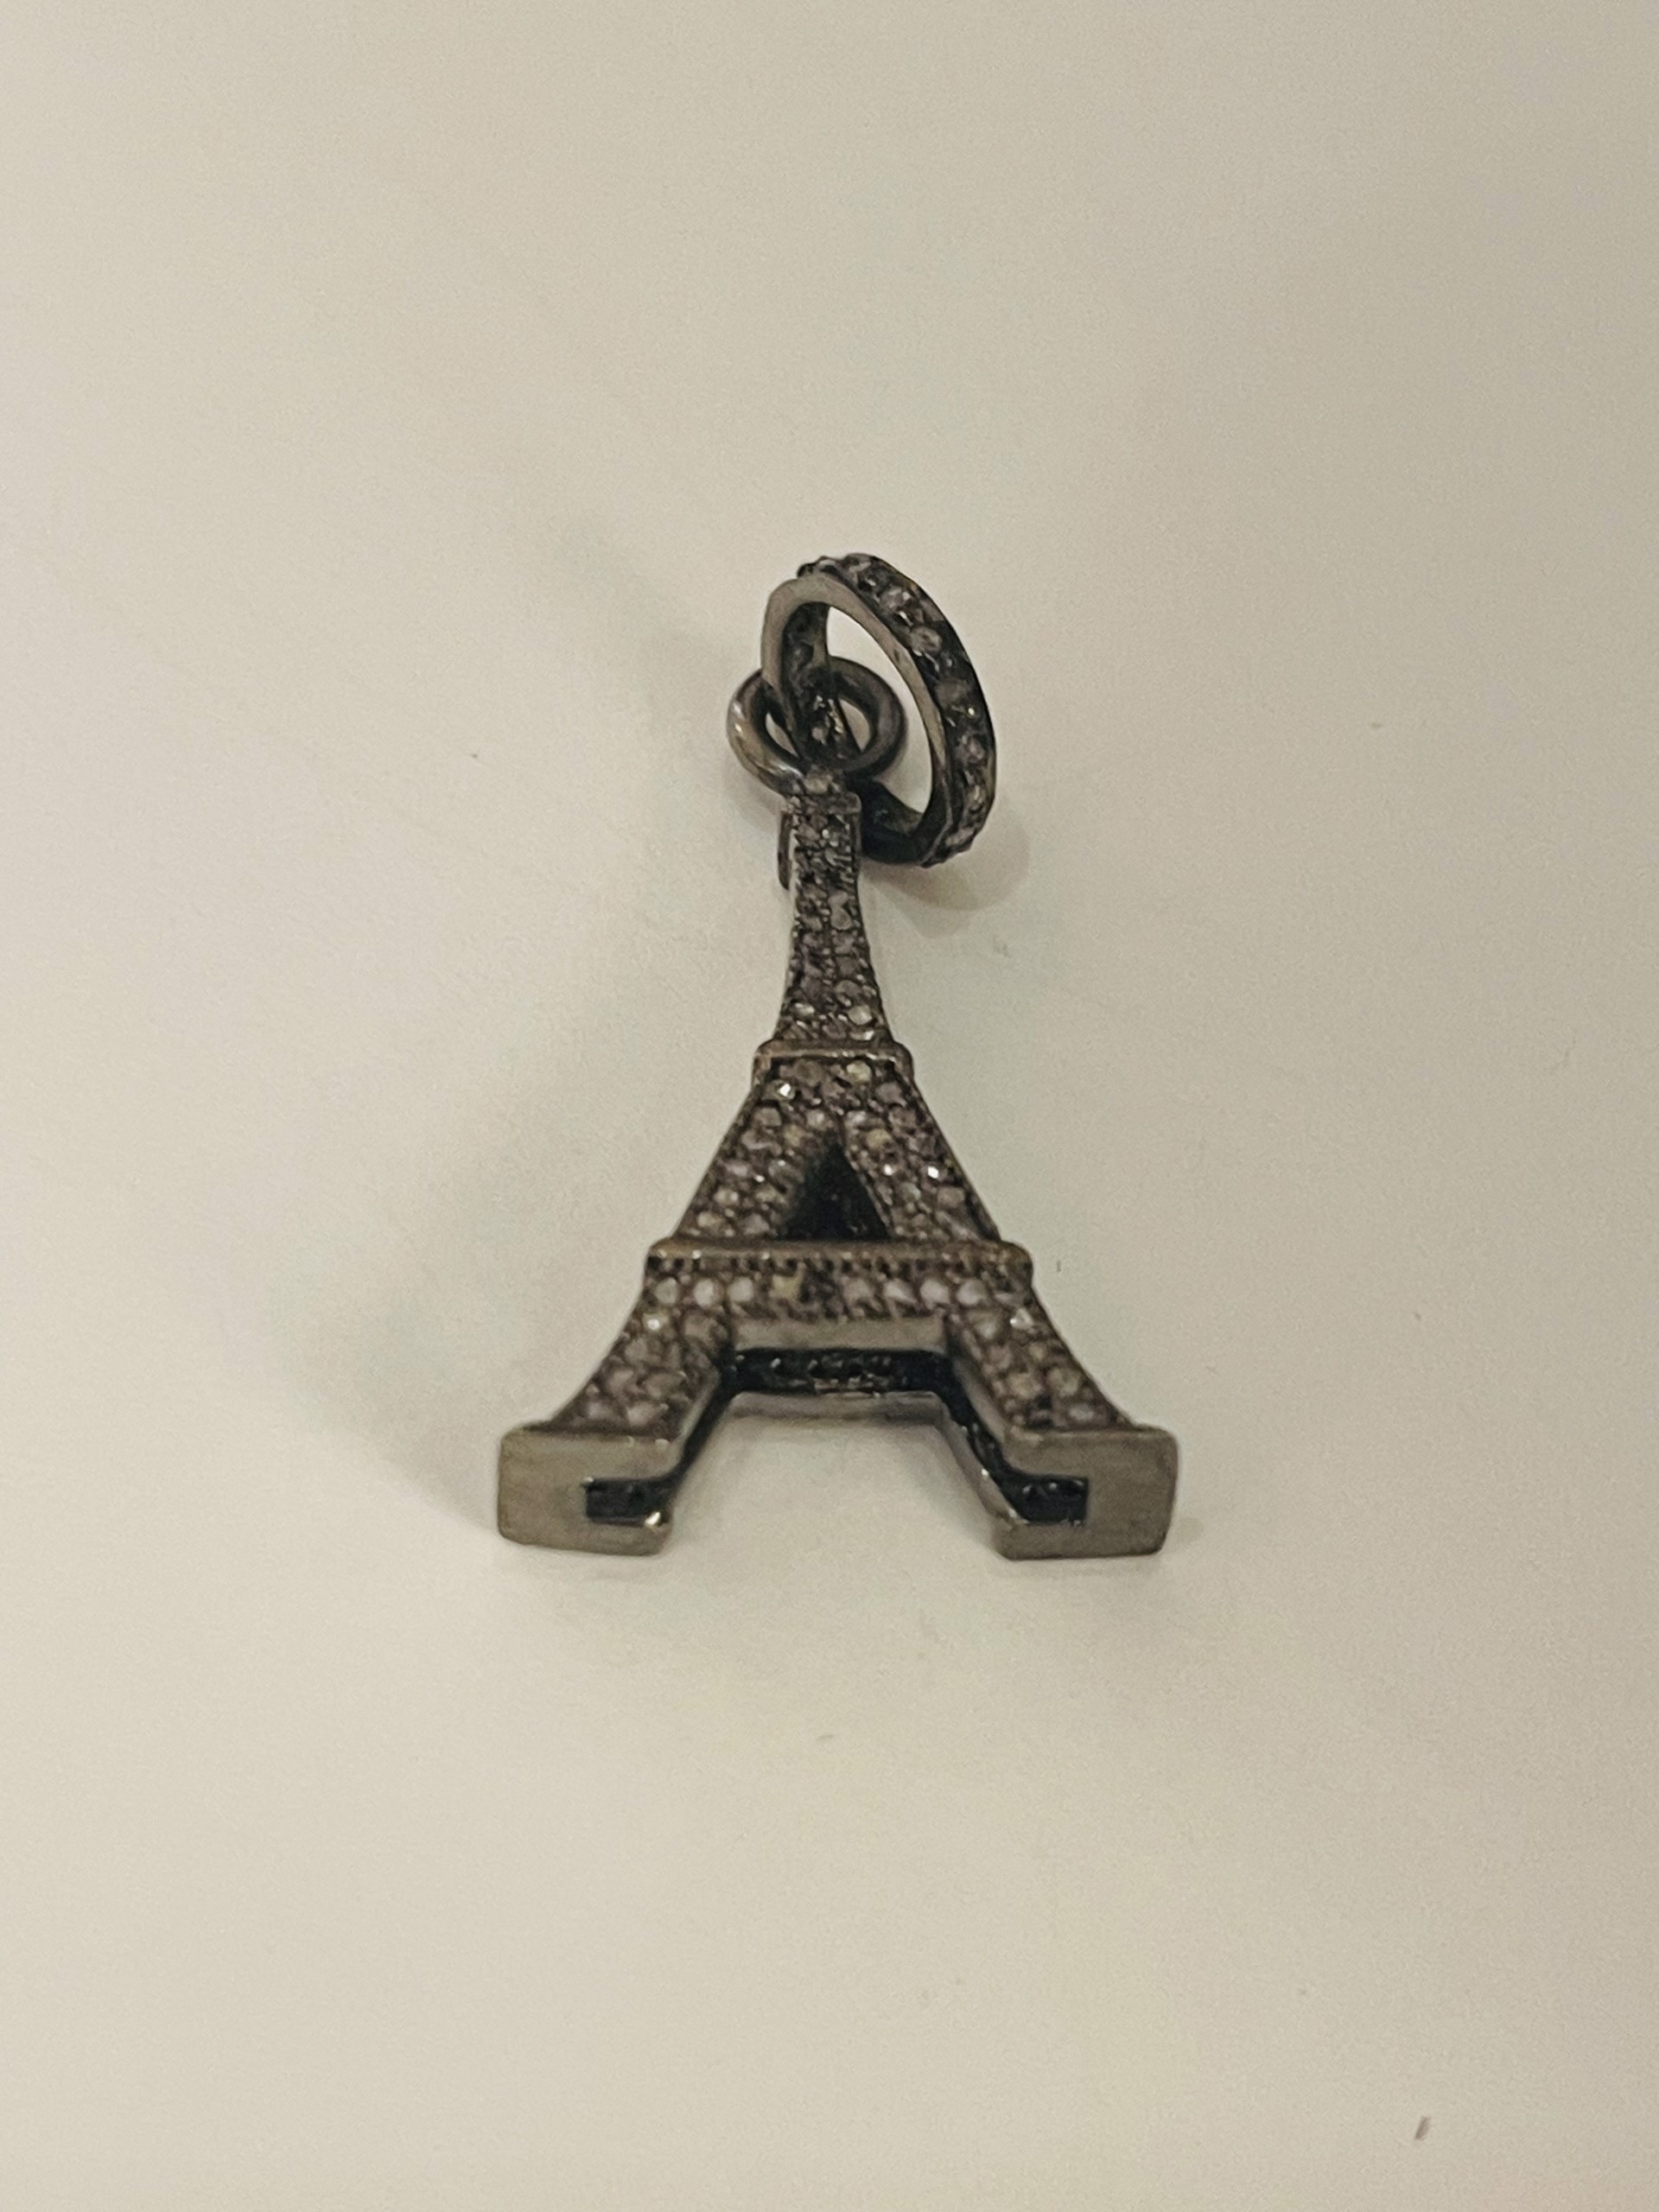 Black Pave Diamond Eiffel Tower Pendant by Karen Birchmier